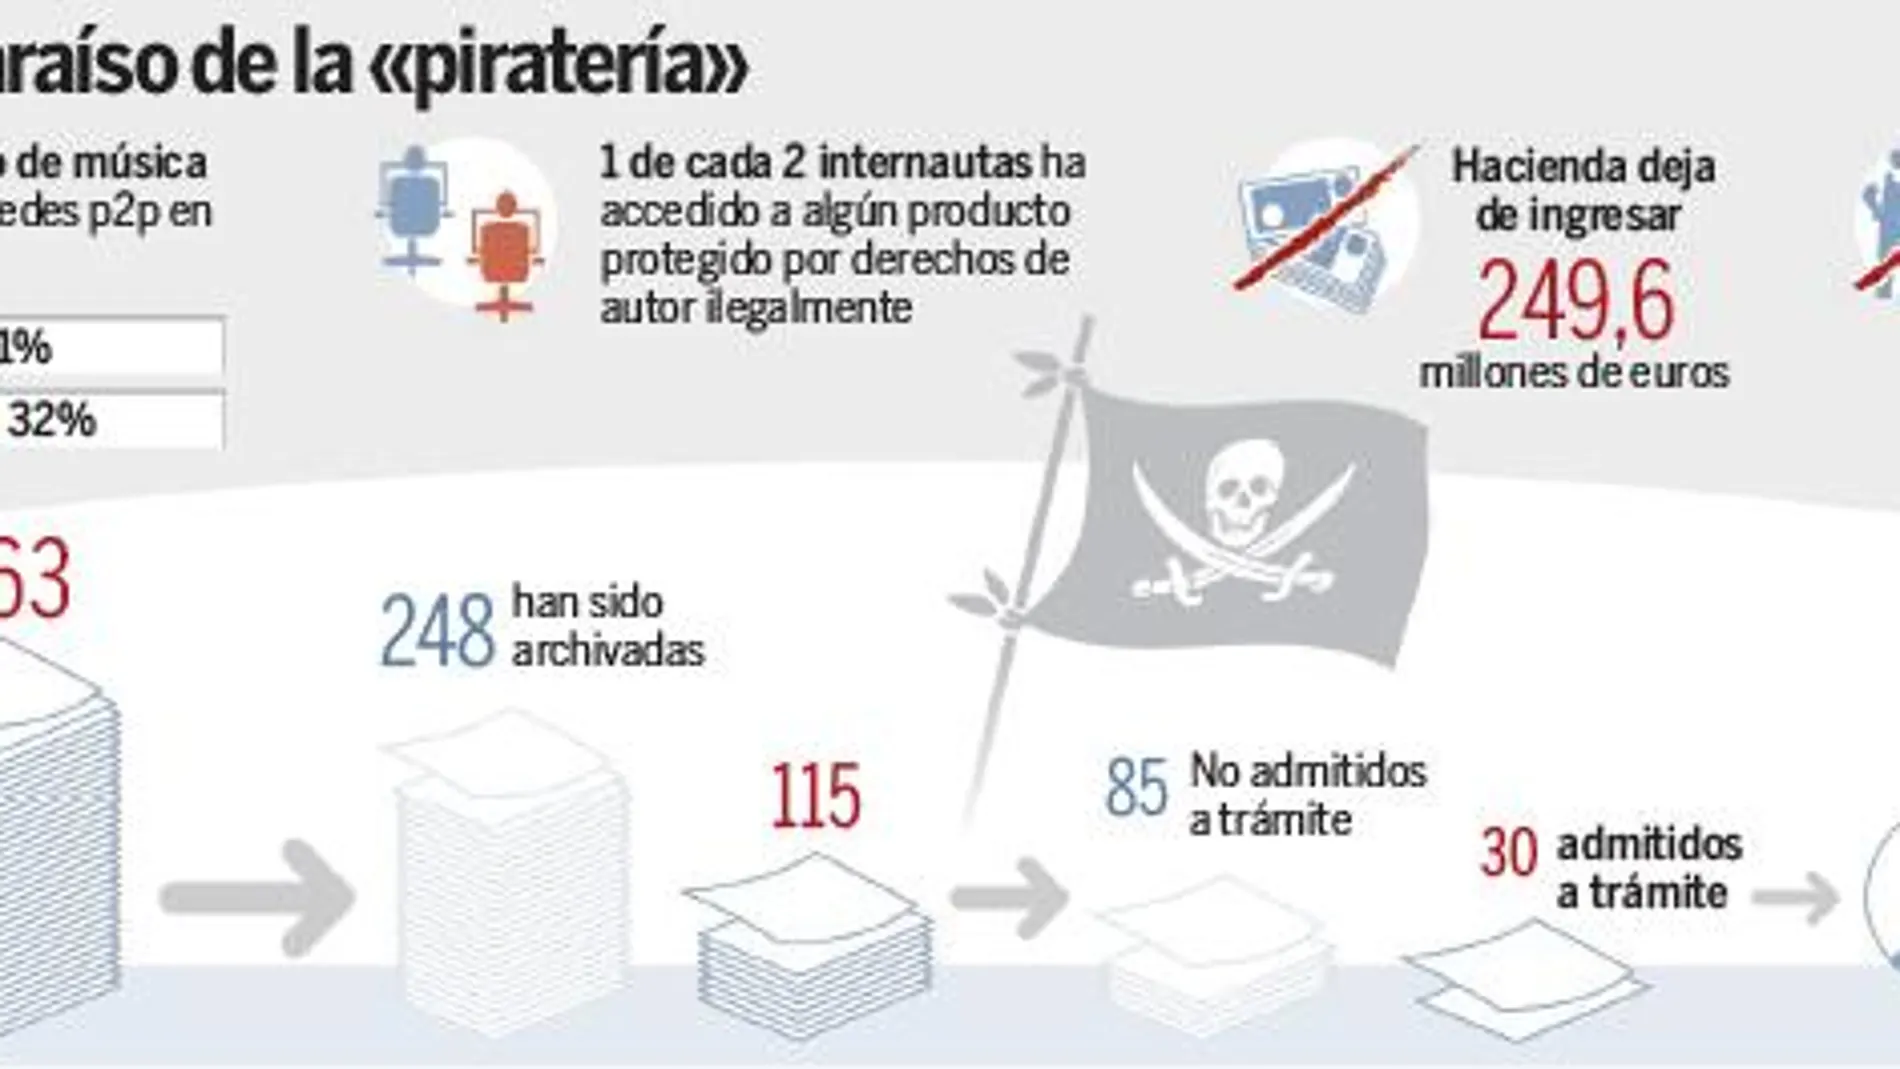 La mitad de los internautas españoles «piratea»